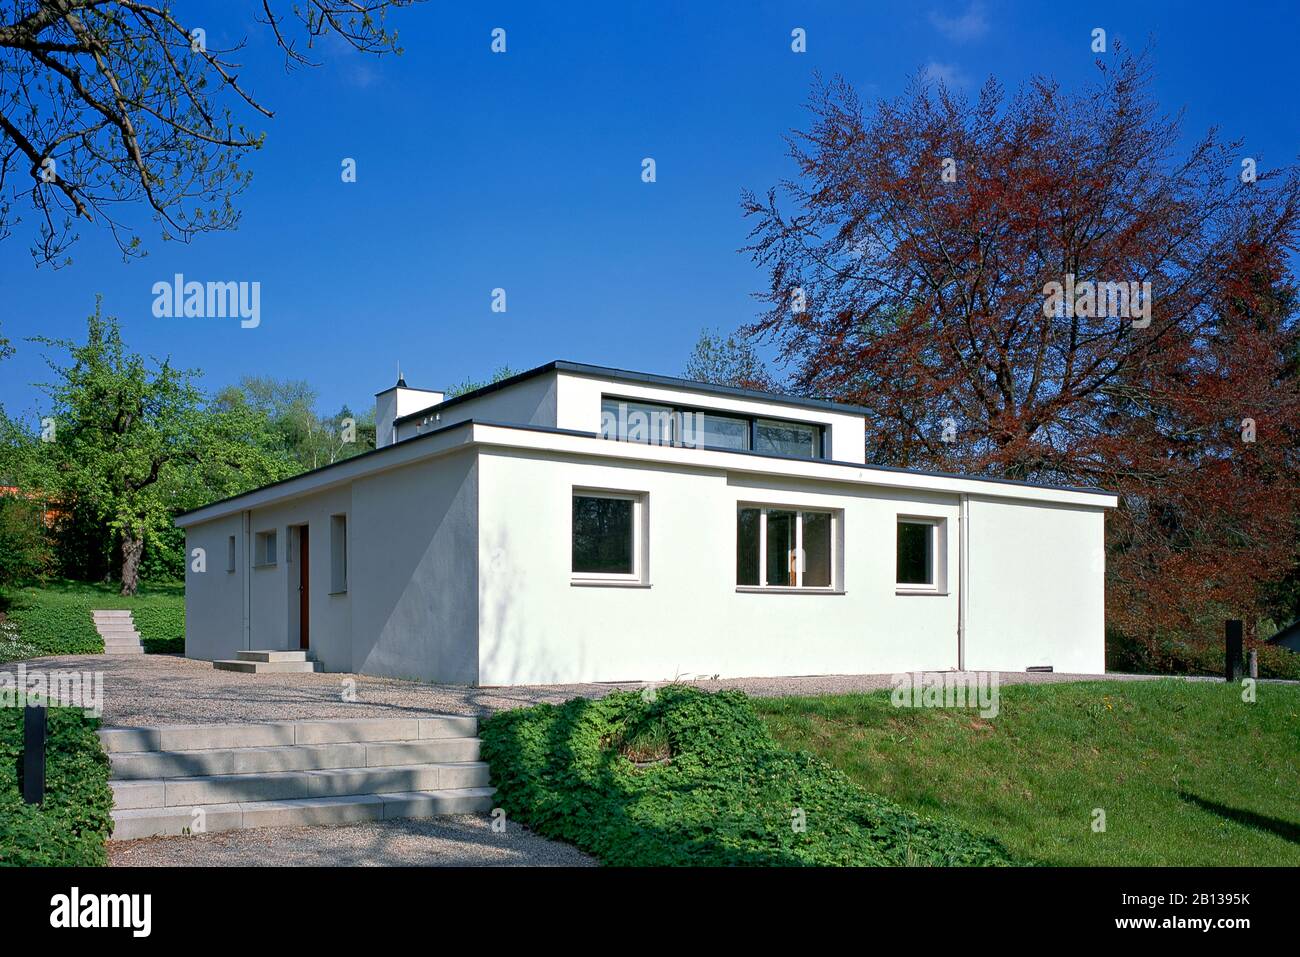 Haus am Horn, Modellhaus des Bauhauses, 1920-22 von Georg Muche, Weimar, Thüringen, Deutschland Stockfoto